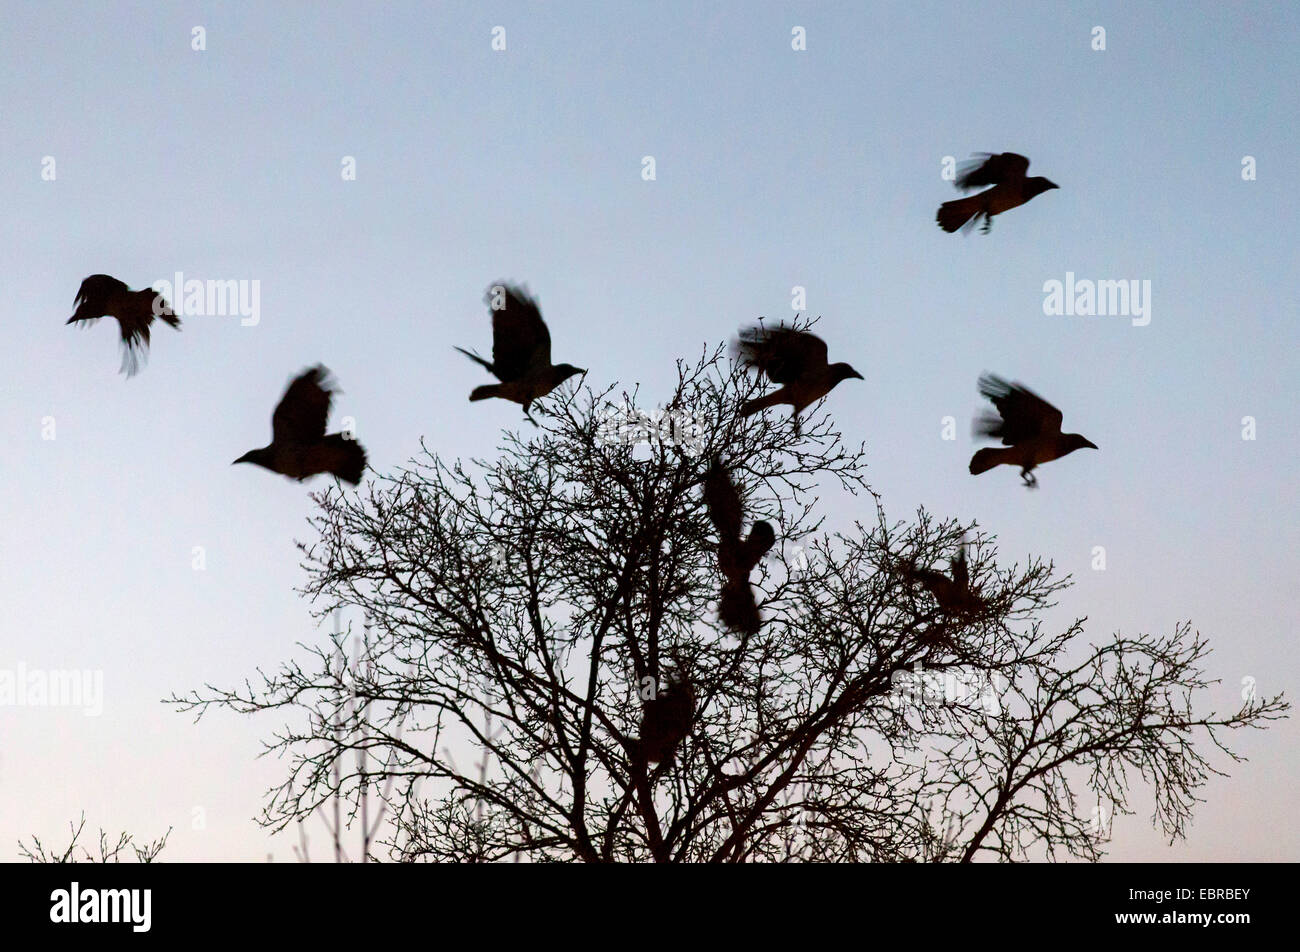 Cornacchia mantellata (Corvus corone cornix, Corvus cornix), cornacchie grige volare fino a partire da un albero dormiente nel crepuscolo, Norvegia, Troms, Tromsoe Foto Stock